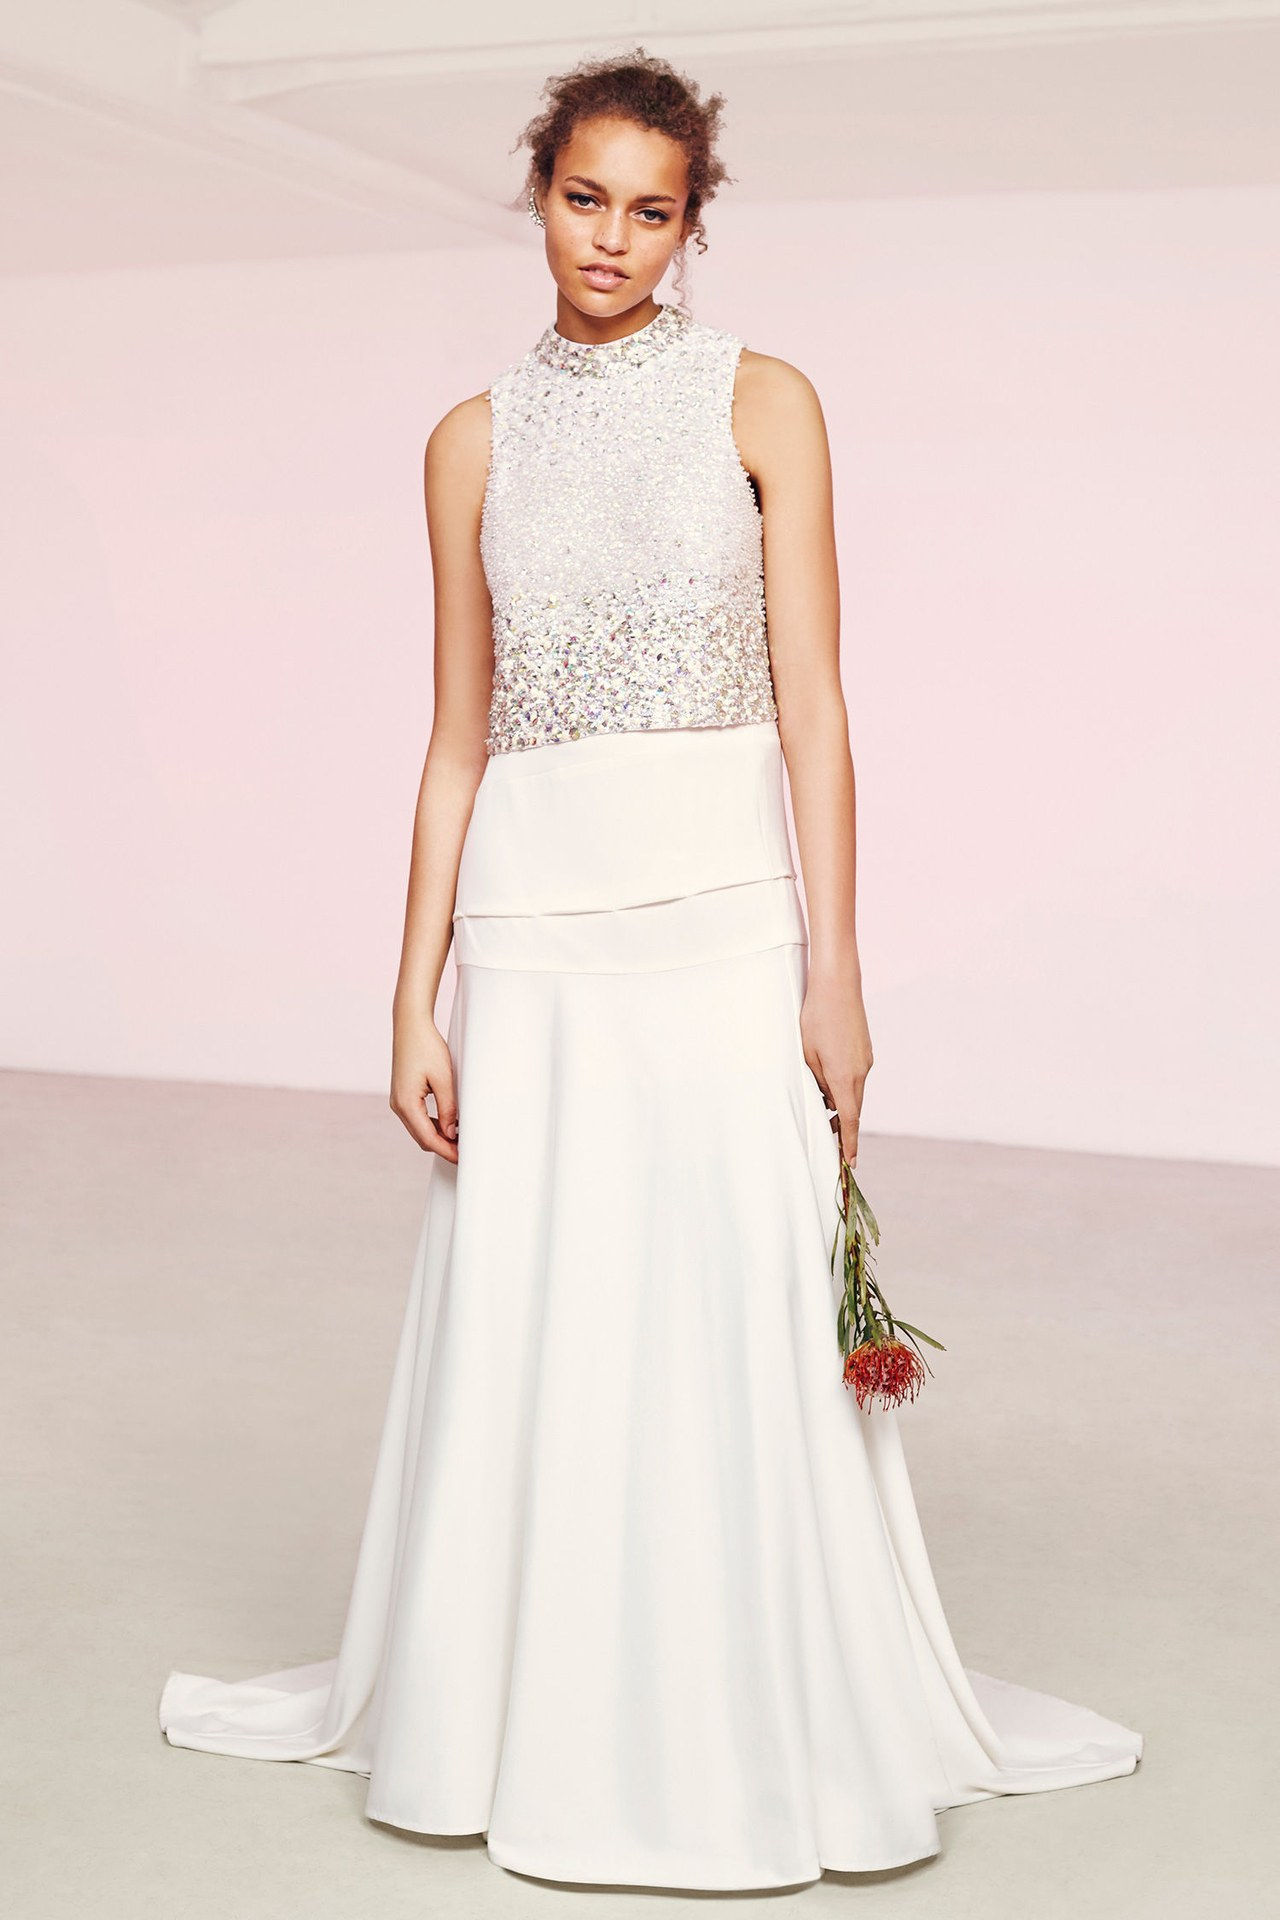 أسوس bridal wedding dresses sparkly top long skirt